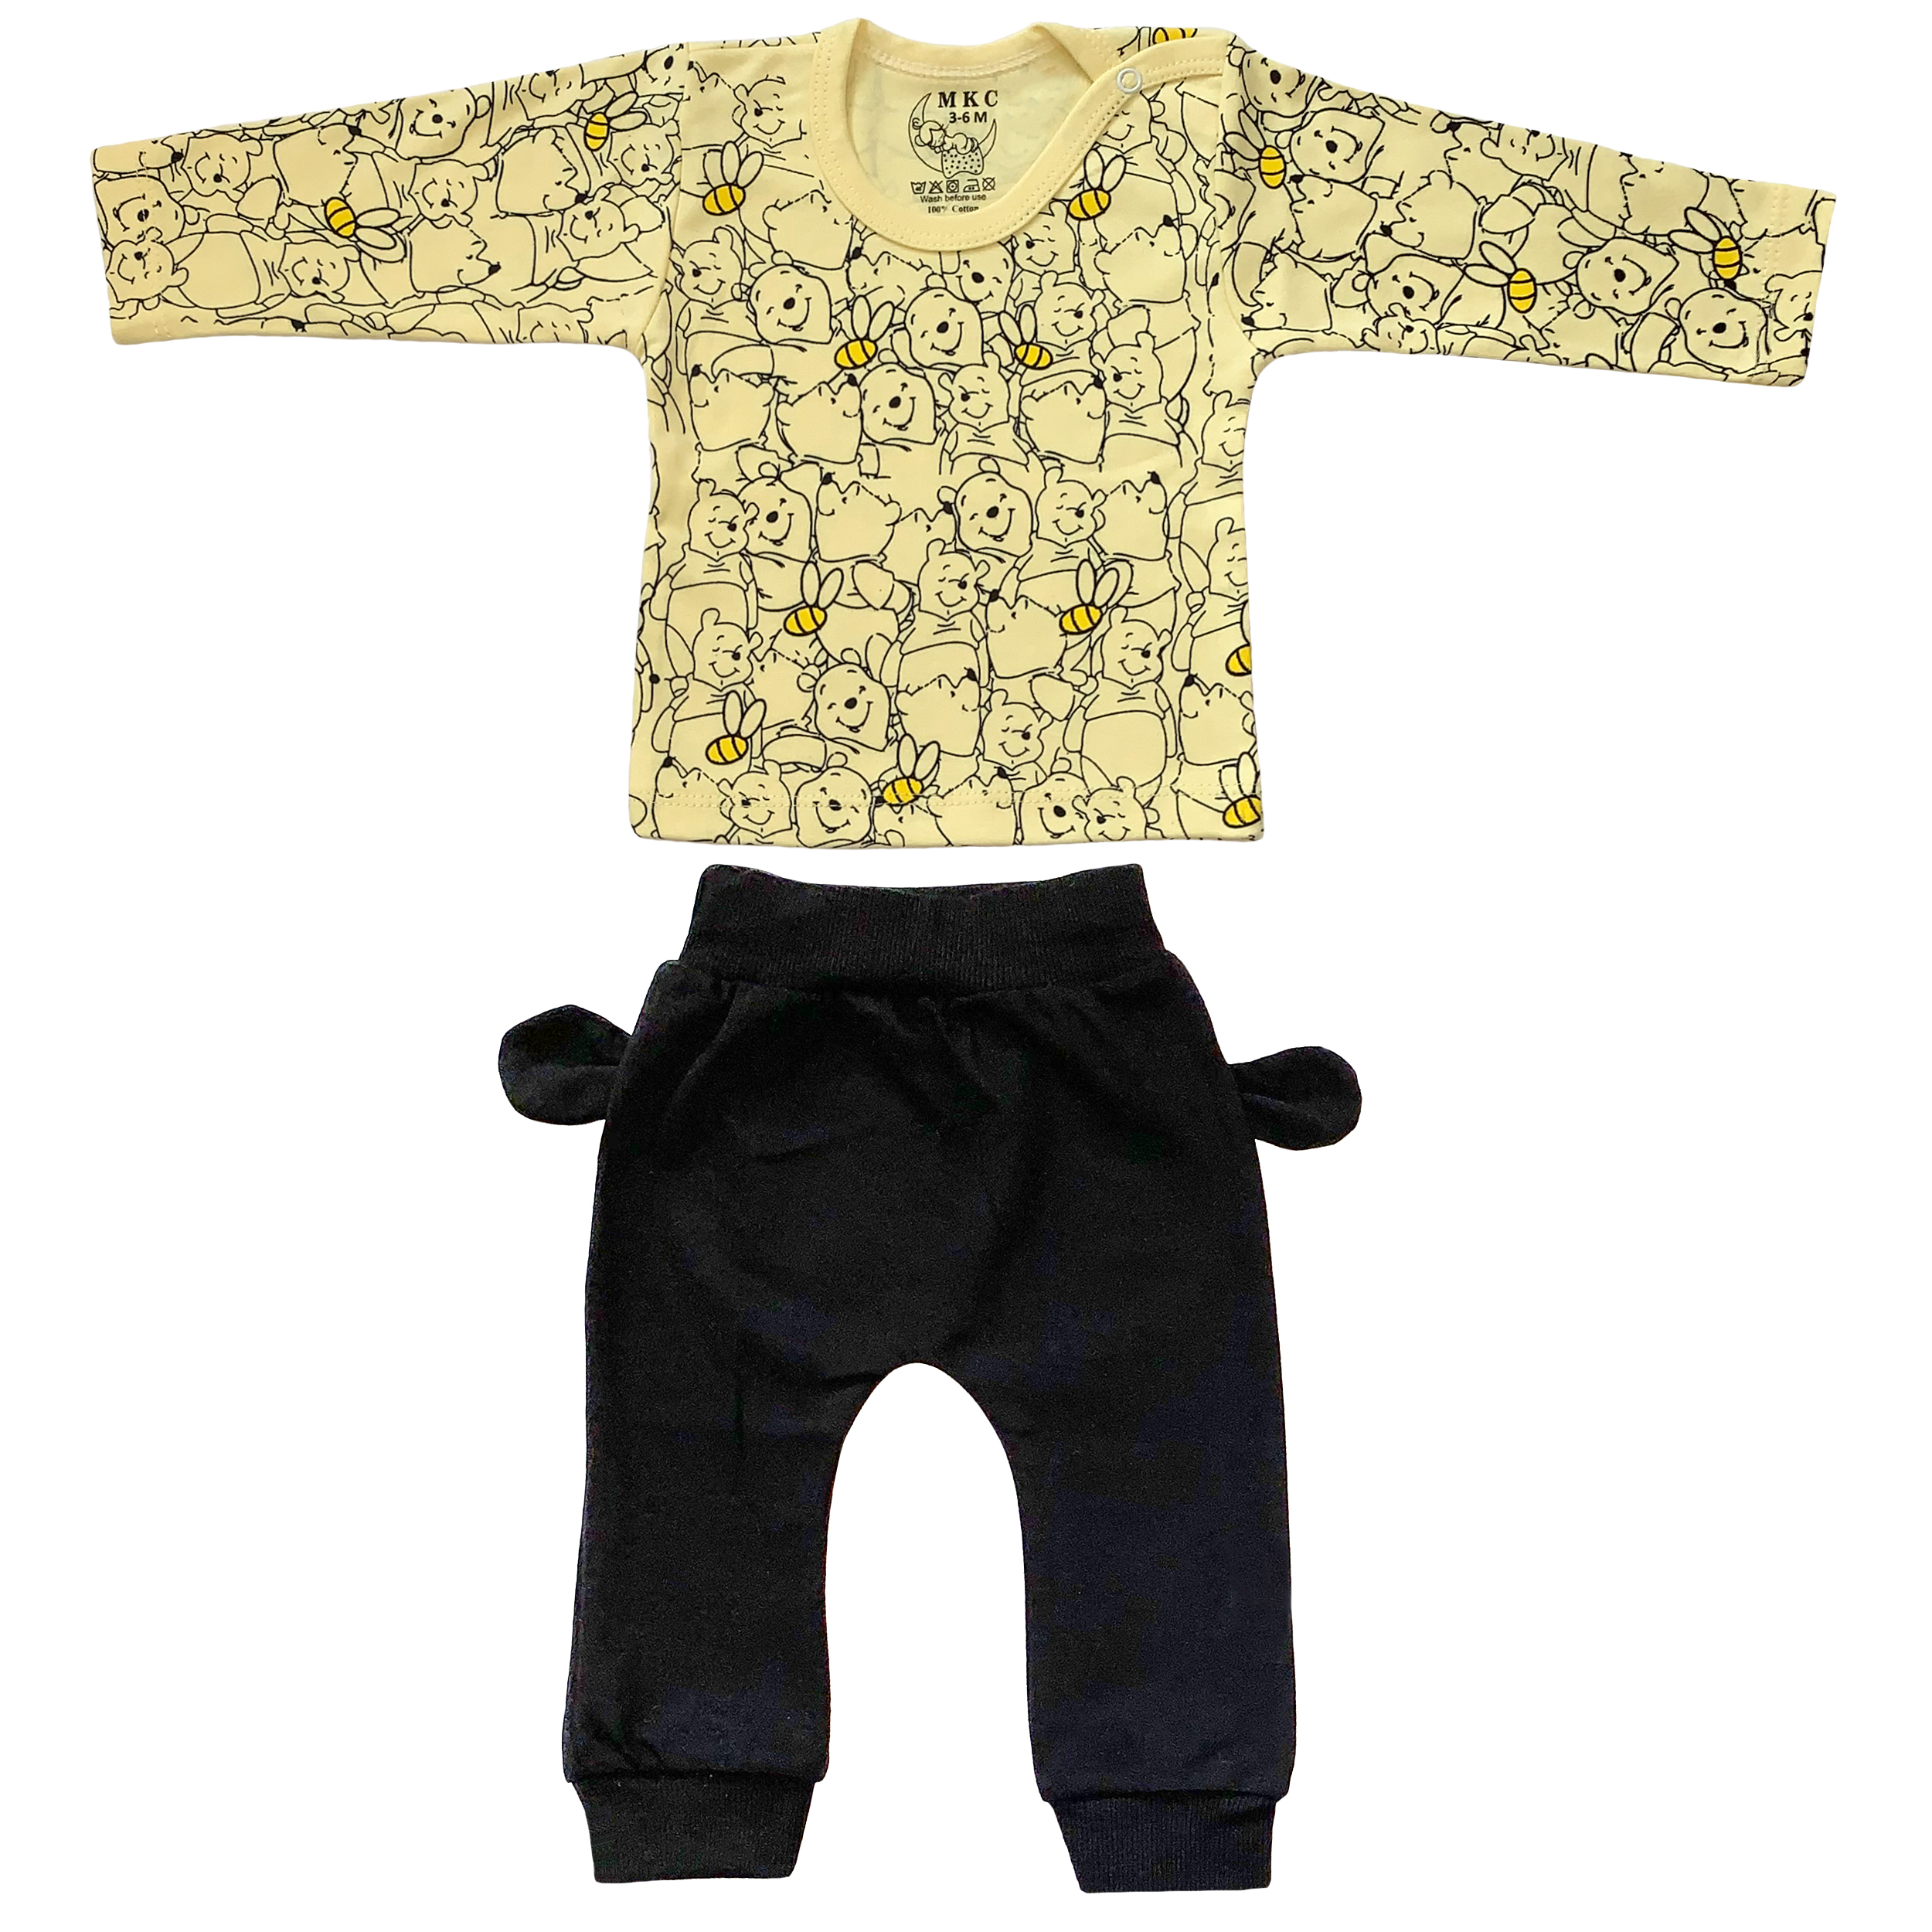  ست تی شرت و شلوار نوزادی طرح پو کد FF-084 